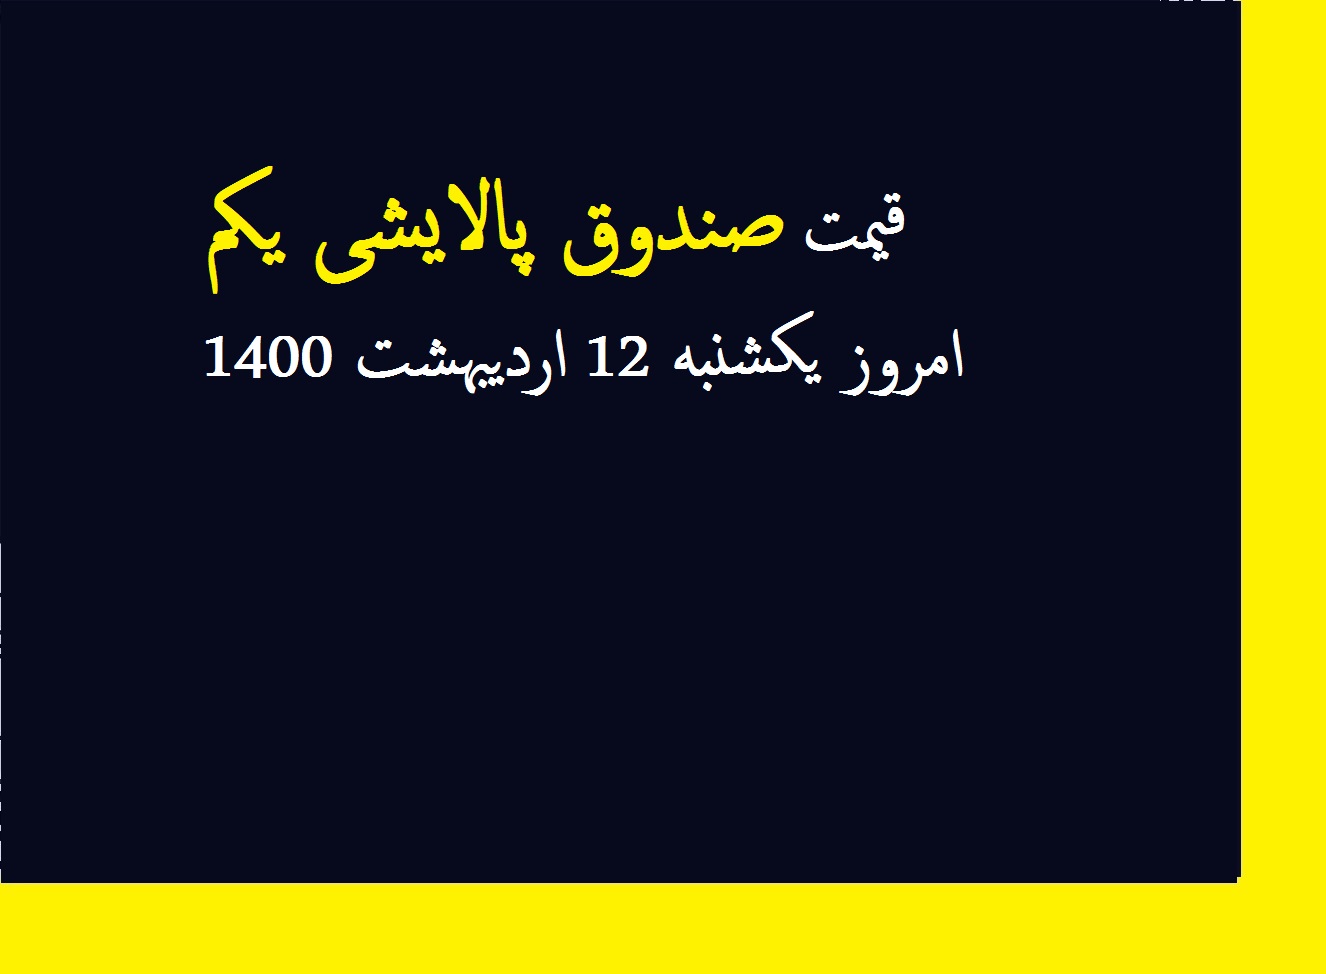 قیمت صندوق پالایشی یکم امروز یکشنبه 12 اردیبهشت 1400